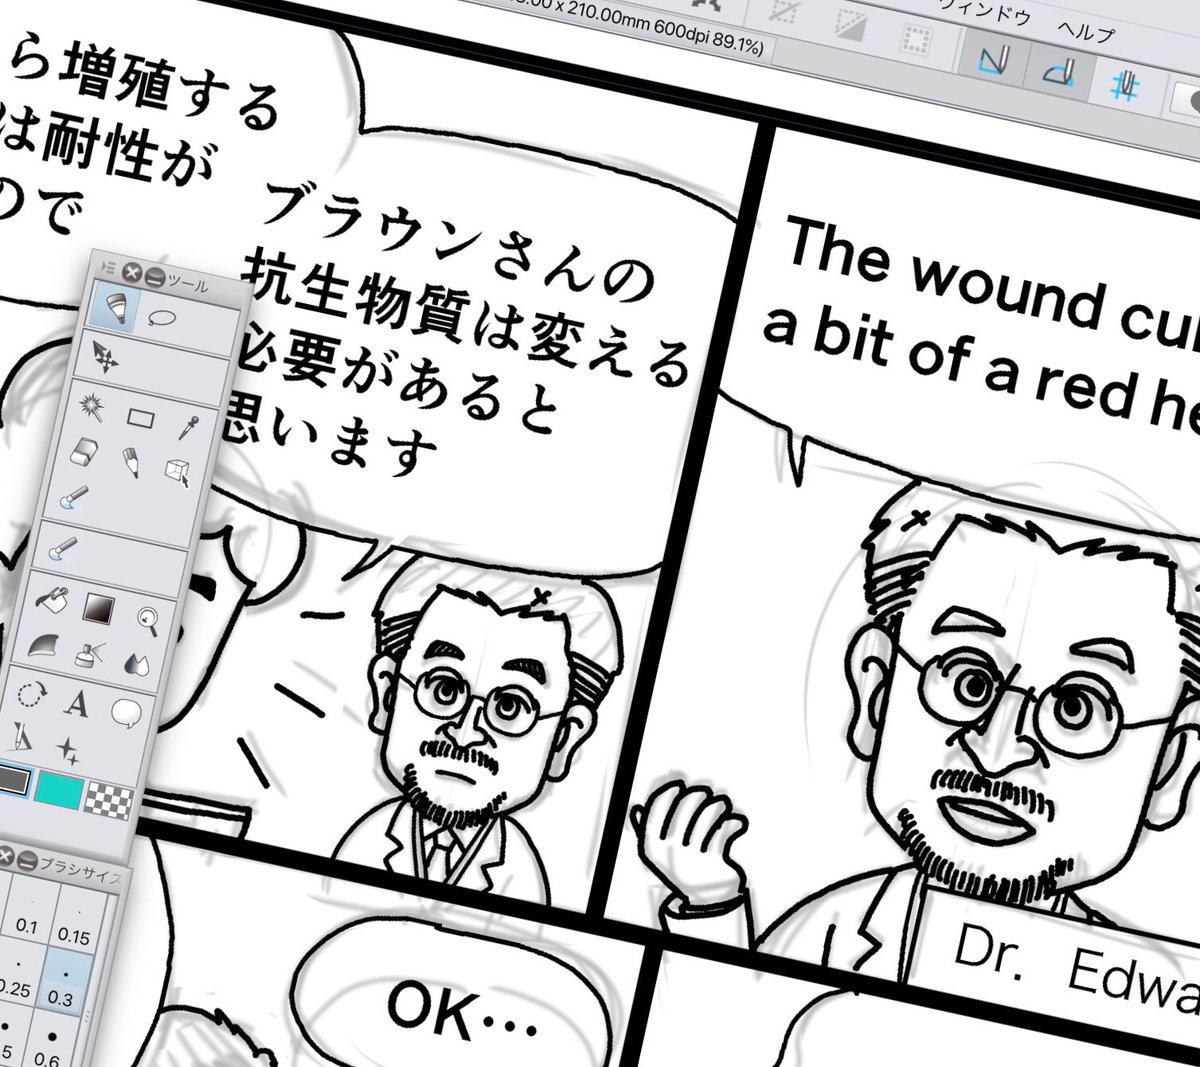 現代洋子 Gendaiyoko בטוויטר 週刊新潮 の 人生で必要な英語はすべて病院で学んだ の挿絵マンガ 今回は久々にエドワード博士が登場です 医学用語を訳すのがちょっと難しい